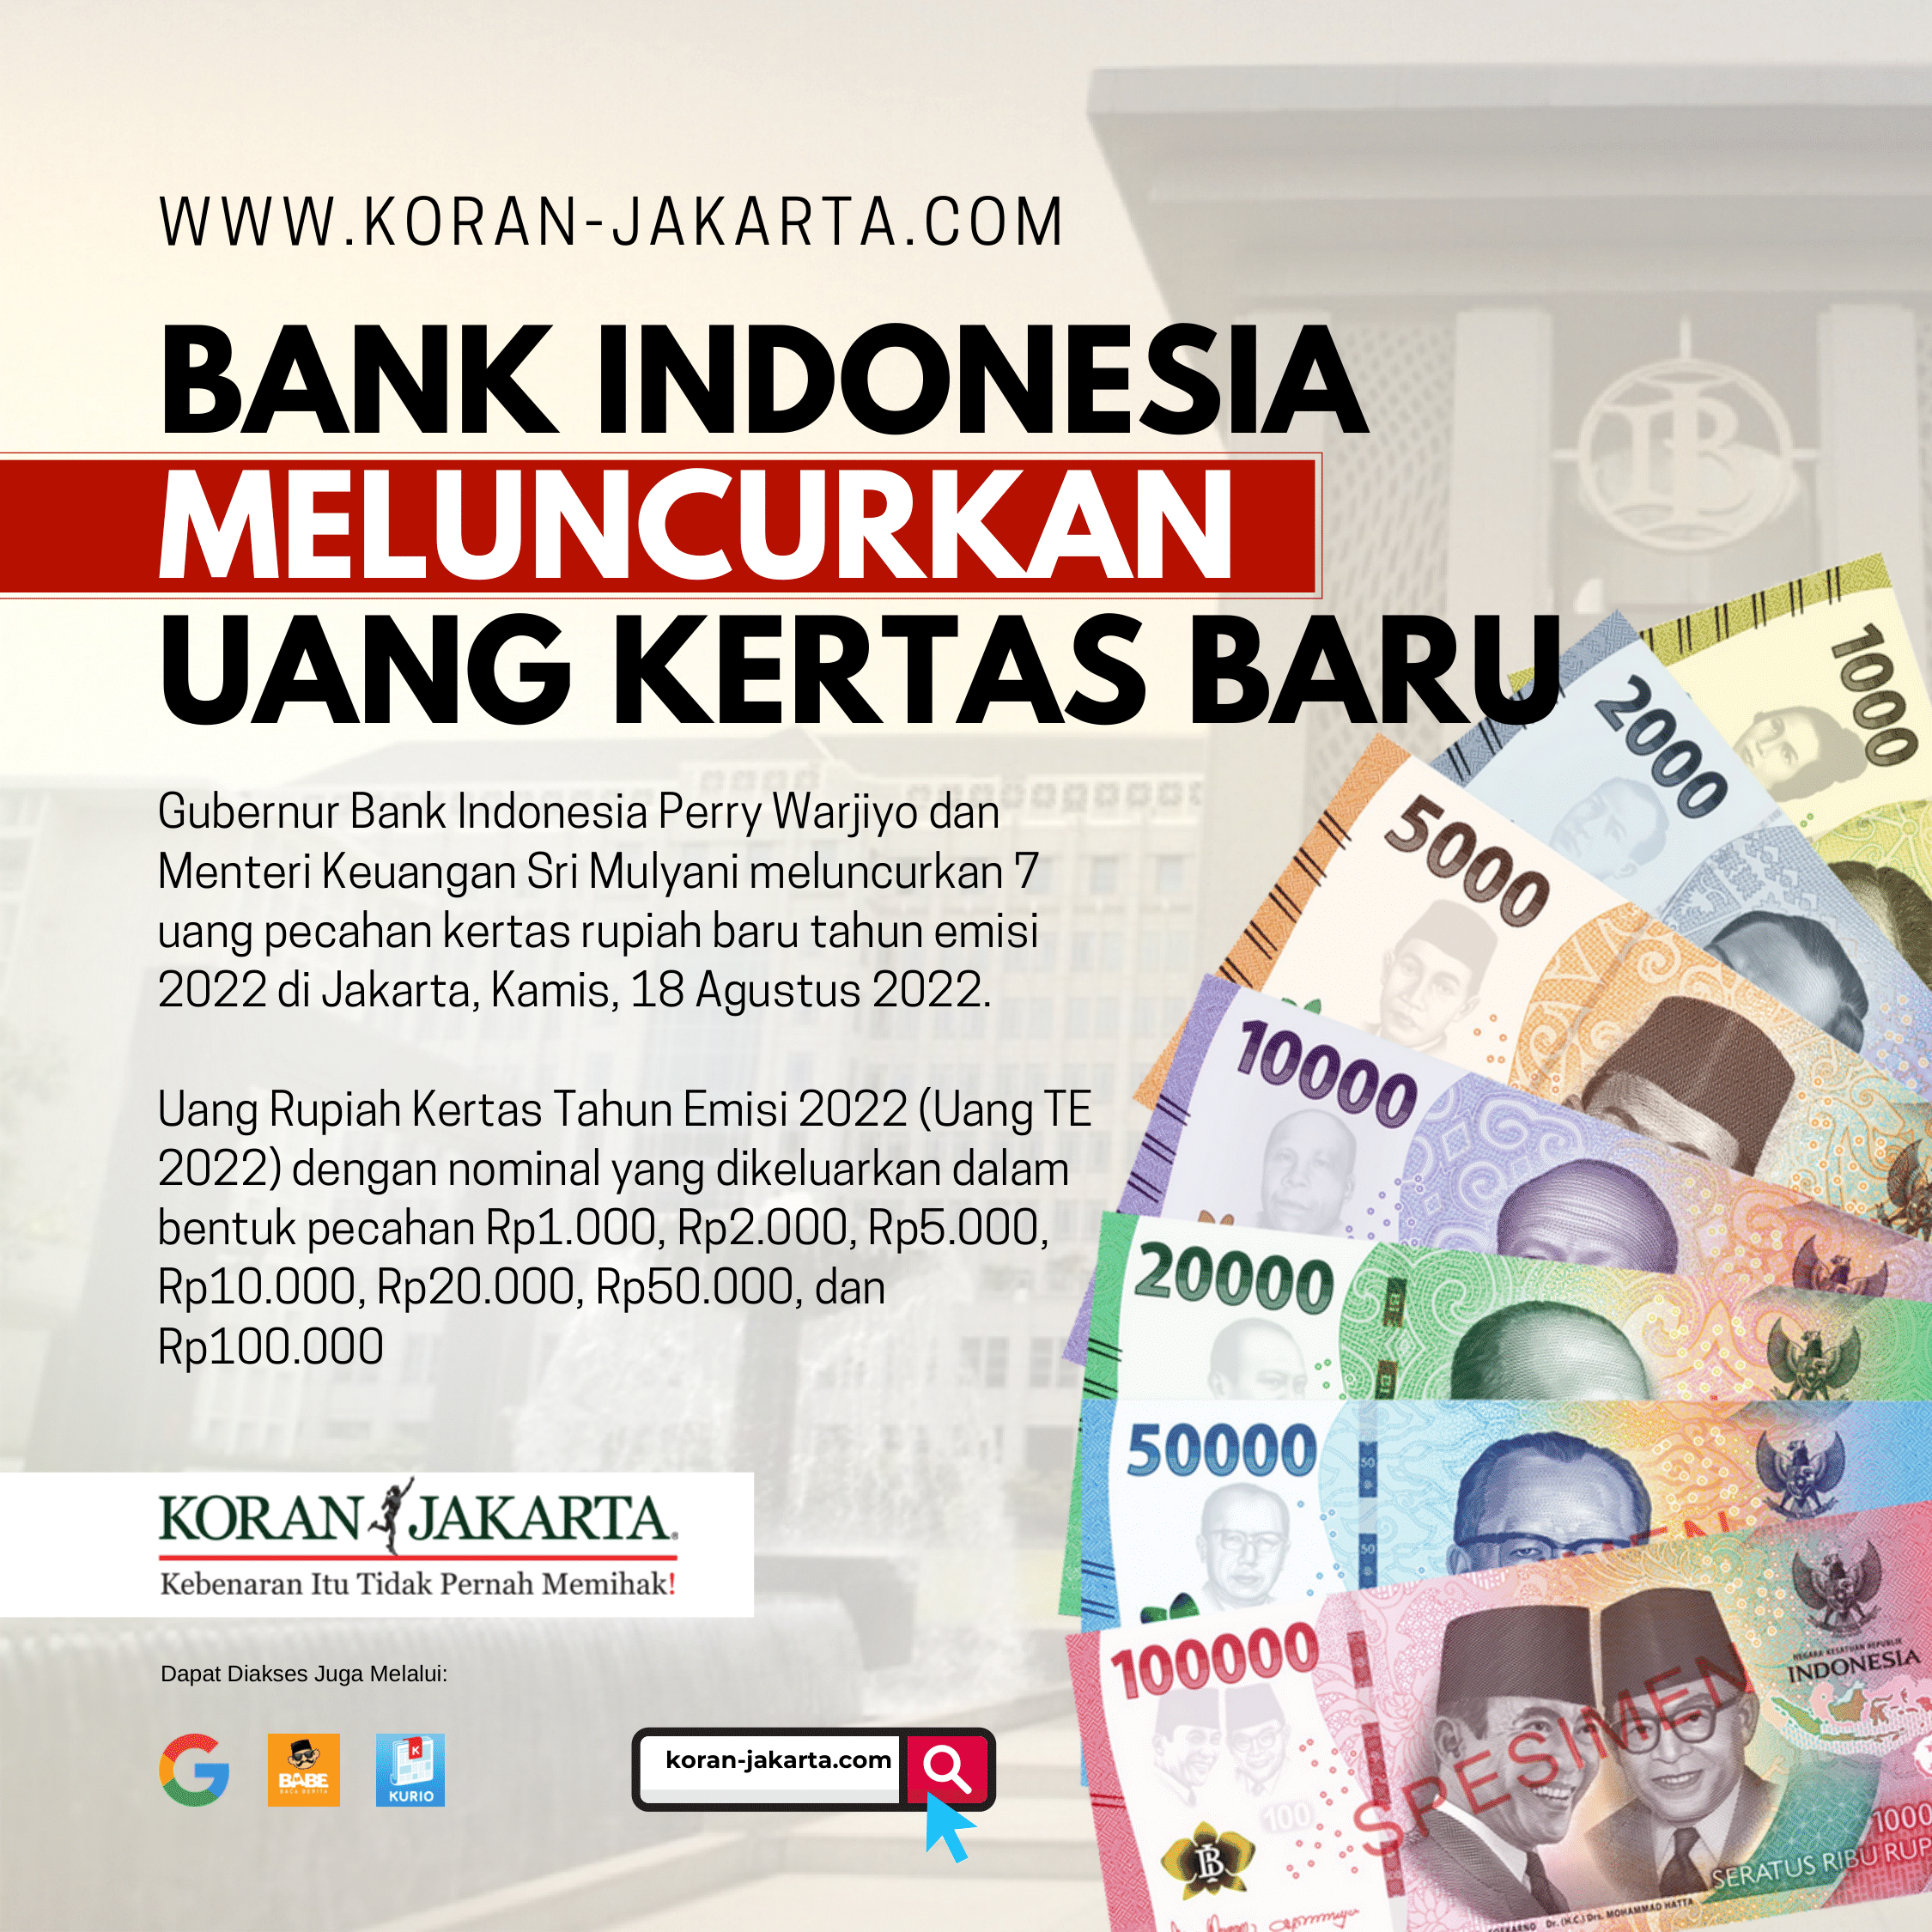 Bank Indonesia Meluncurkan Uang Kertas Baru